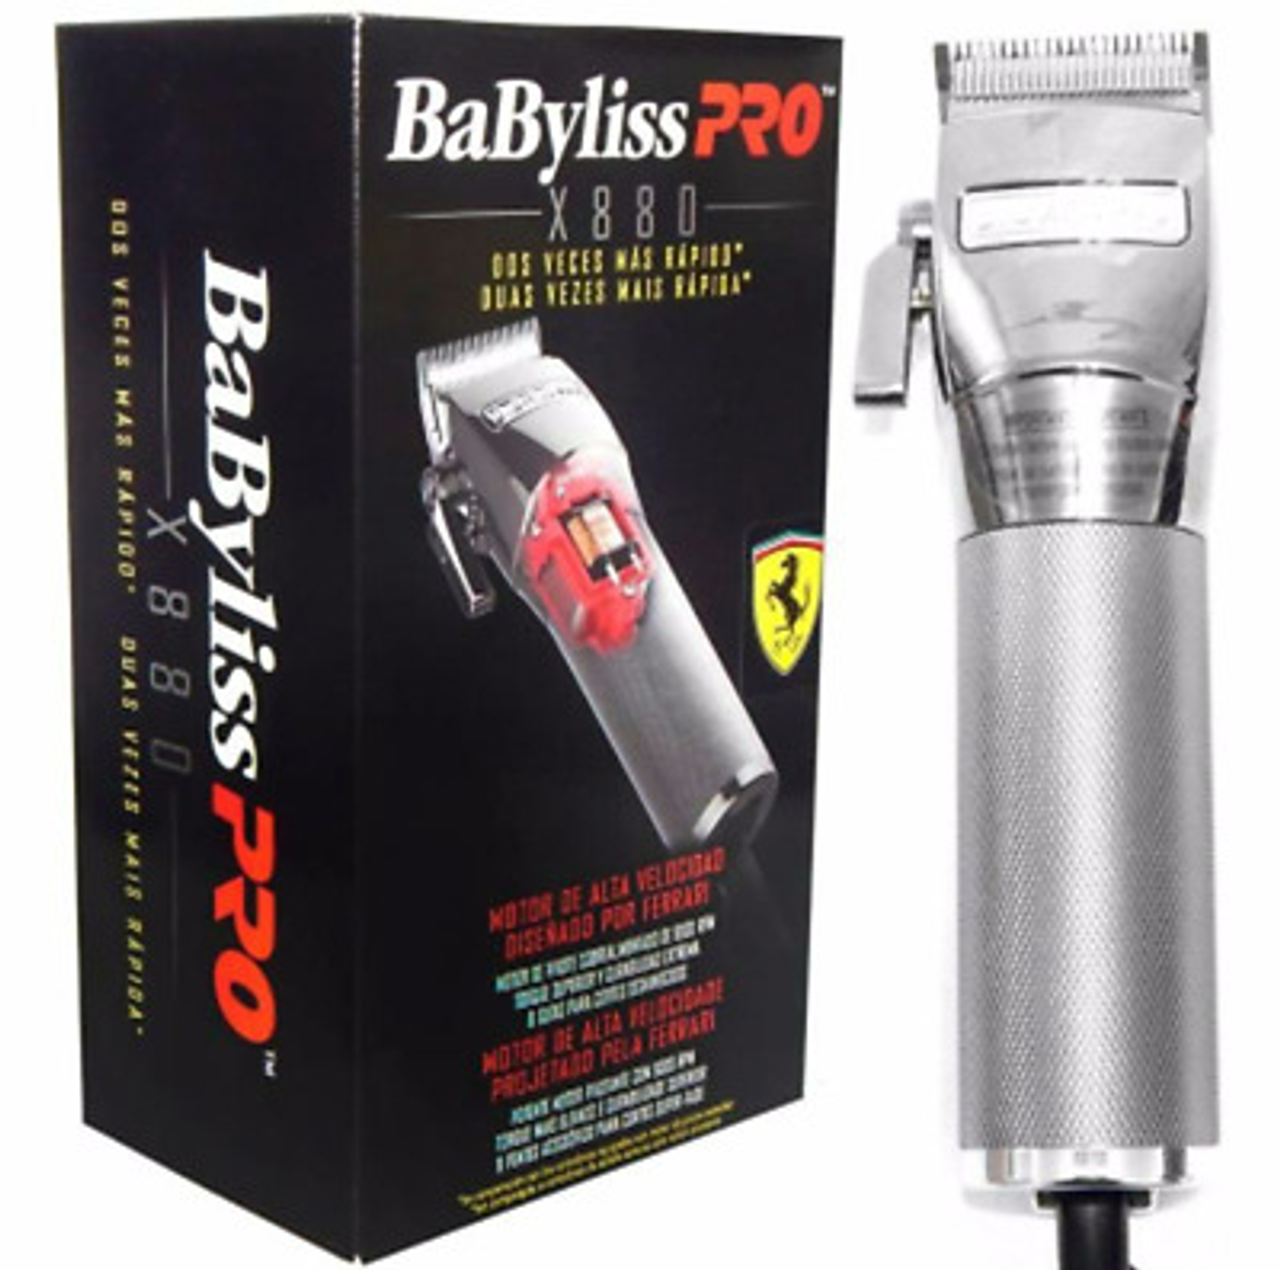 Babyliss ferrari. BABYLISS Pro fx880e. BABYLISS Pro Ferrari. Машинка для стрижки BABYLISS клипер. BABYLISS Rapid Pro Ferrari.